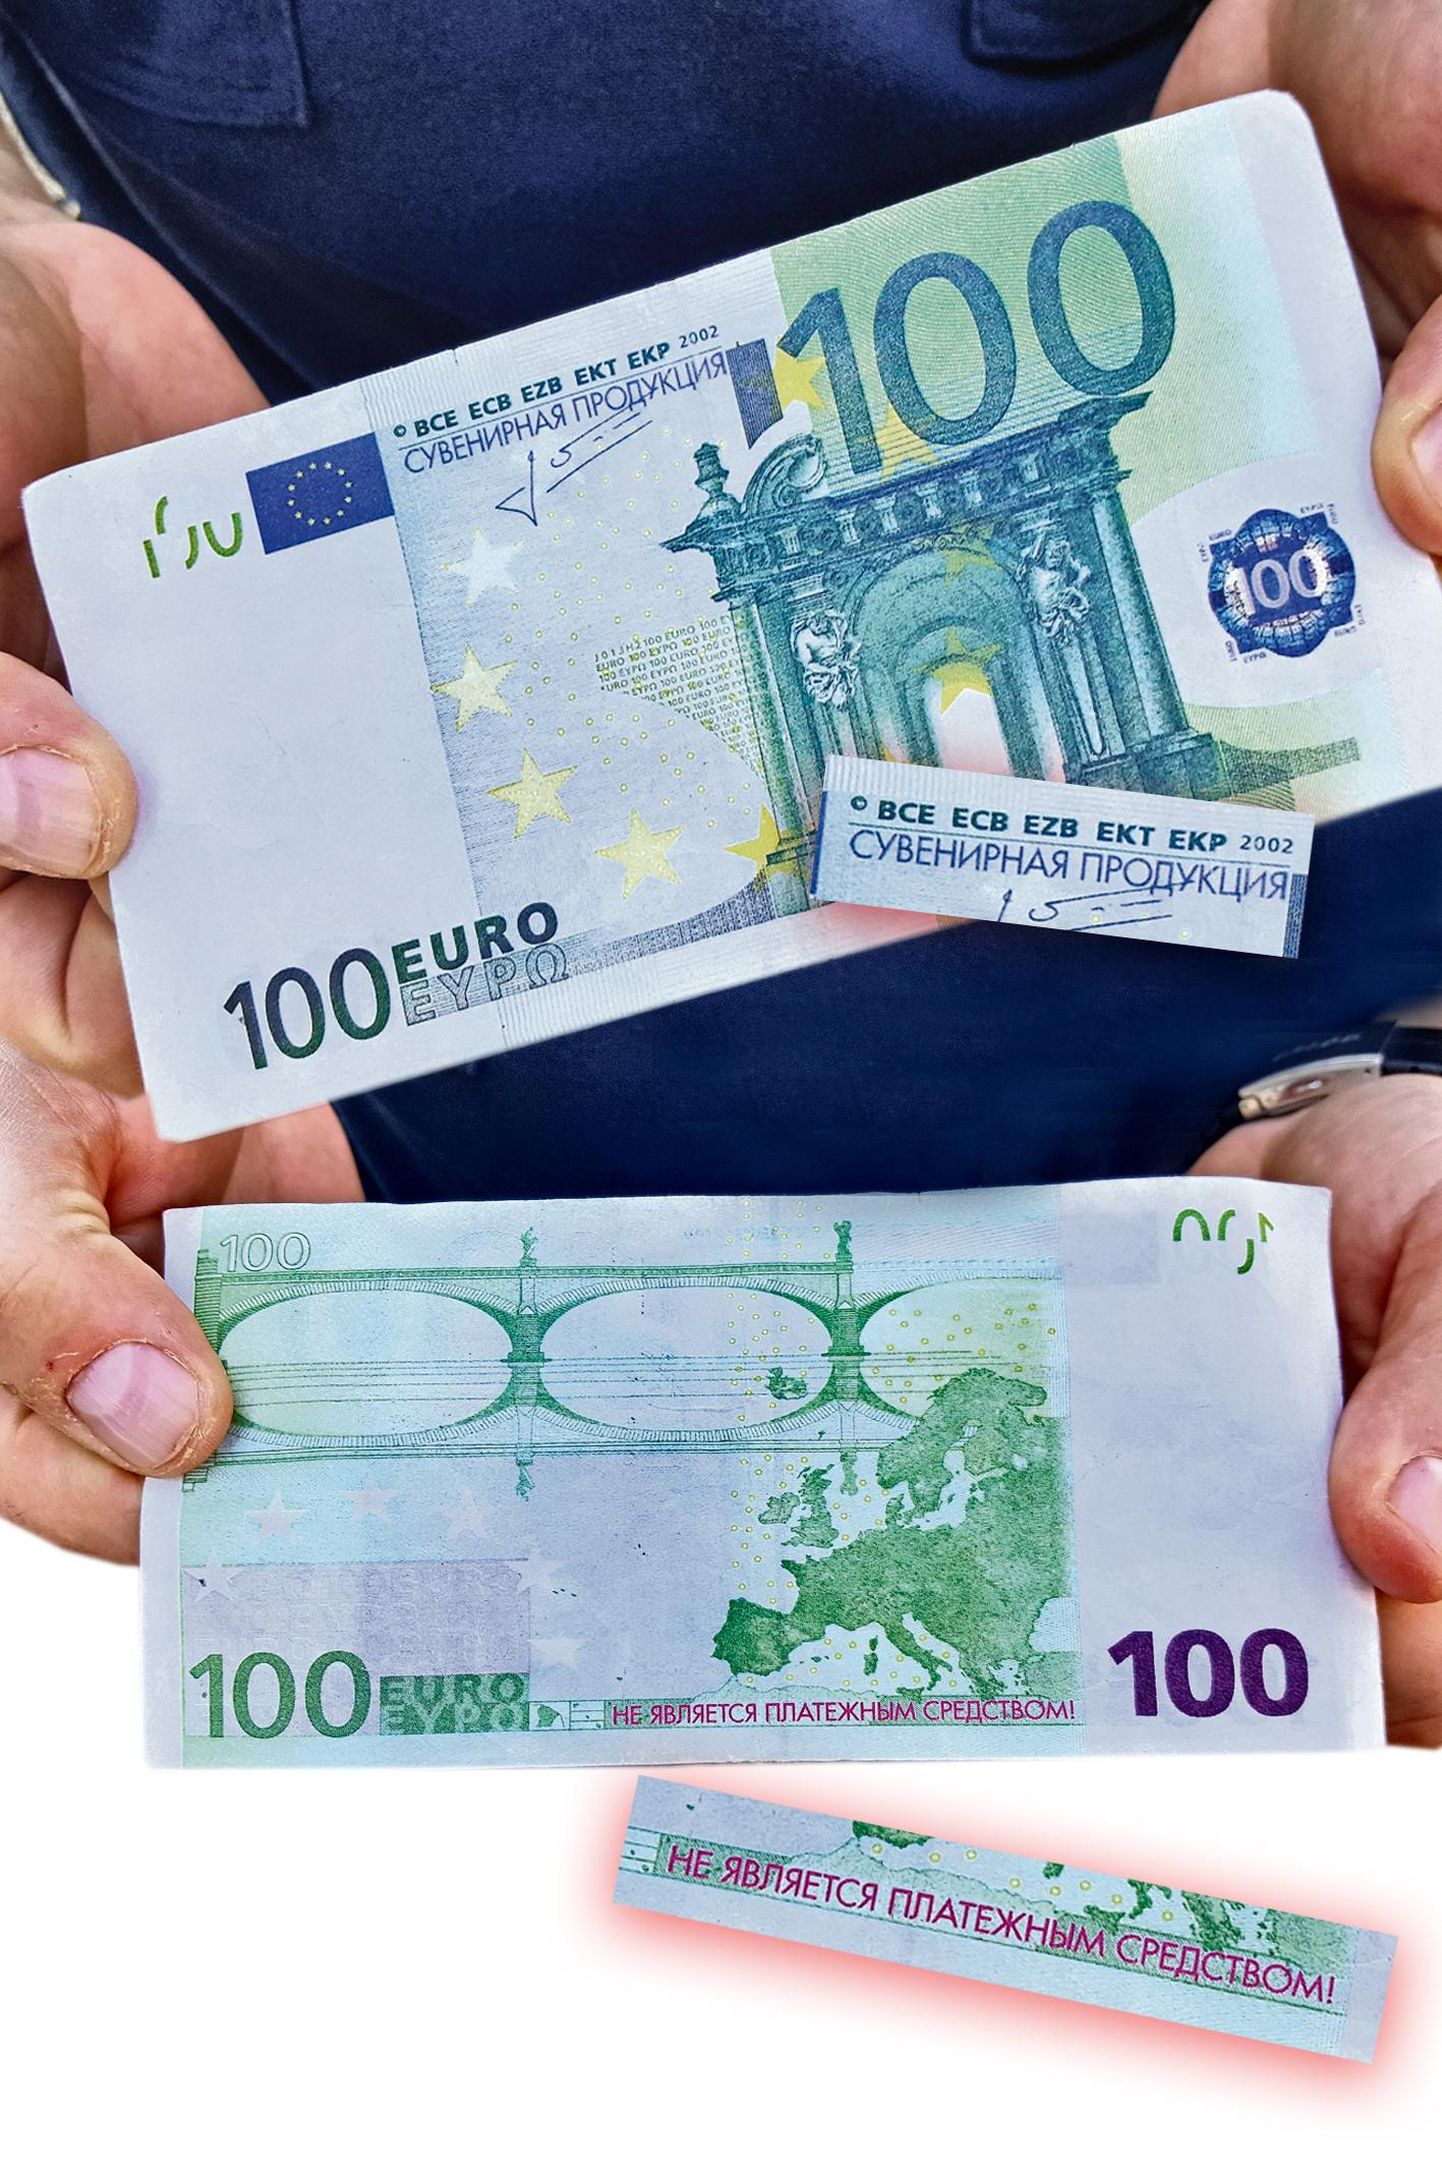 Сувенирная 100-евровая купюра.